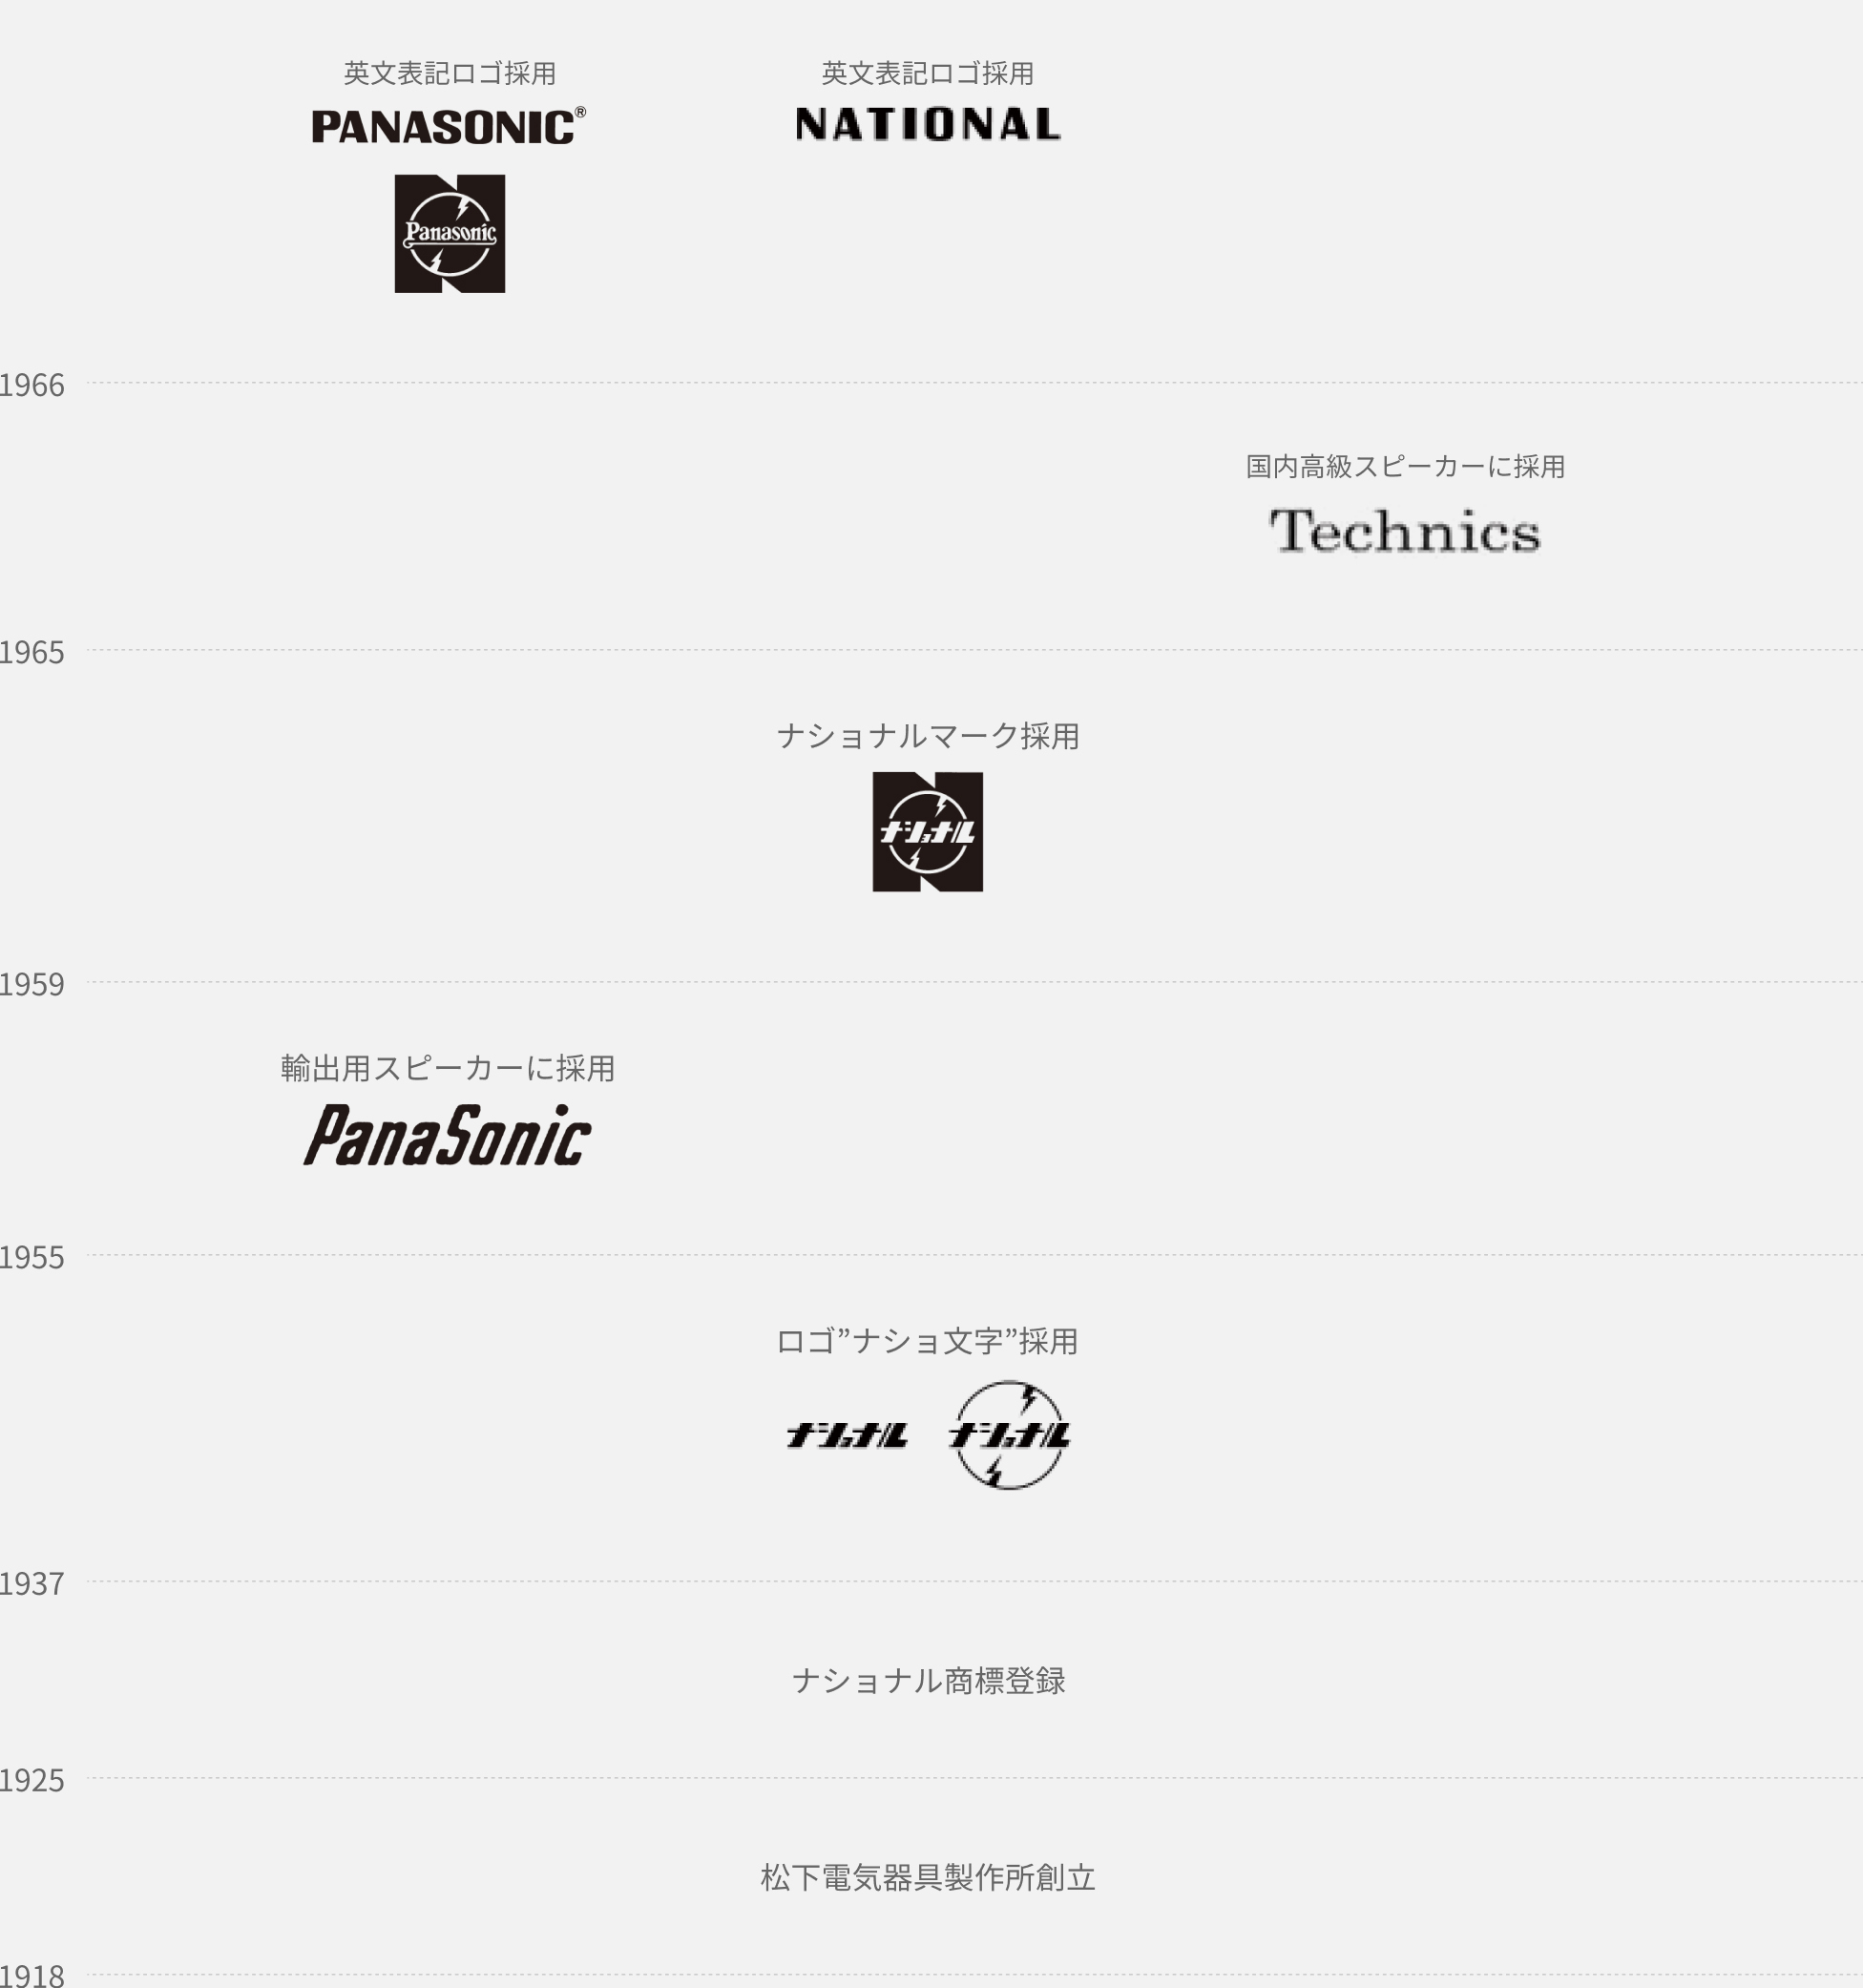 1966 年：英文表記ロゴ採用「Panasonic」、「National」。1965 年：Technics　国内高級スピーカーに採用。1959 年：ナショナルマーク採用「ナショナル」。1955 年：輸出用スピーカーに採用「Panasonic」。1937 年：ロゴ”ナショ文字”採用「ナショナル」。1925 年：ナショナル商標登録。1918 年：松下電気器具製作所創立。